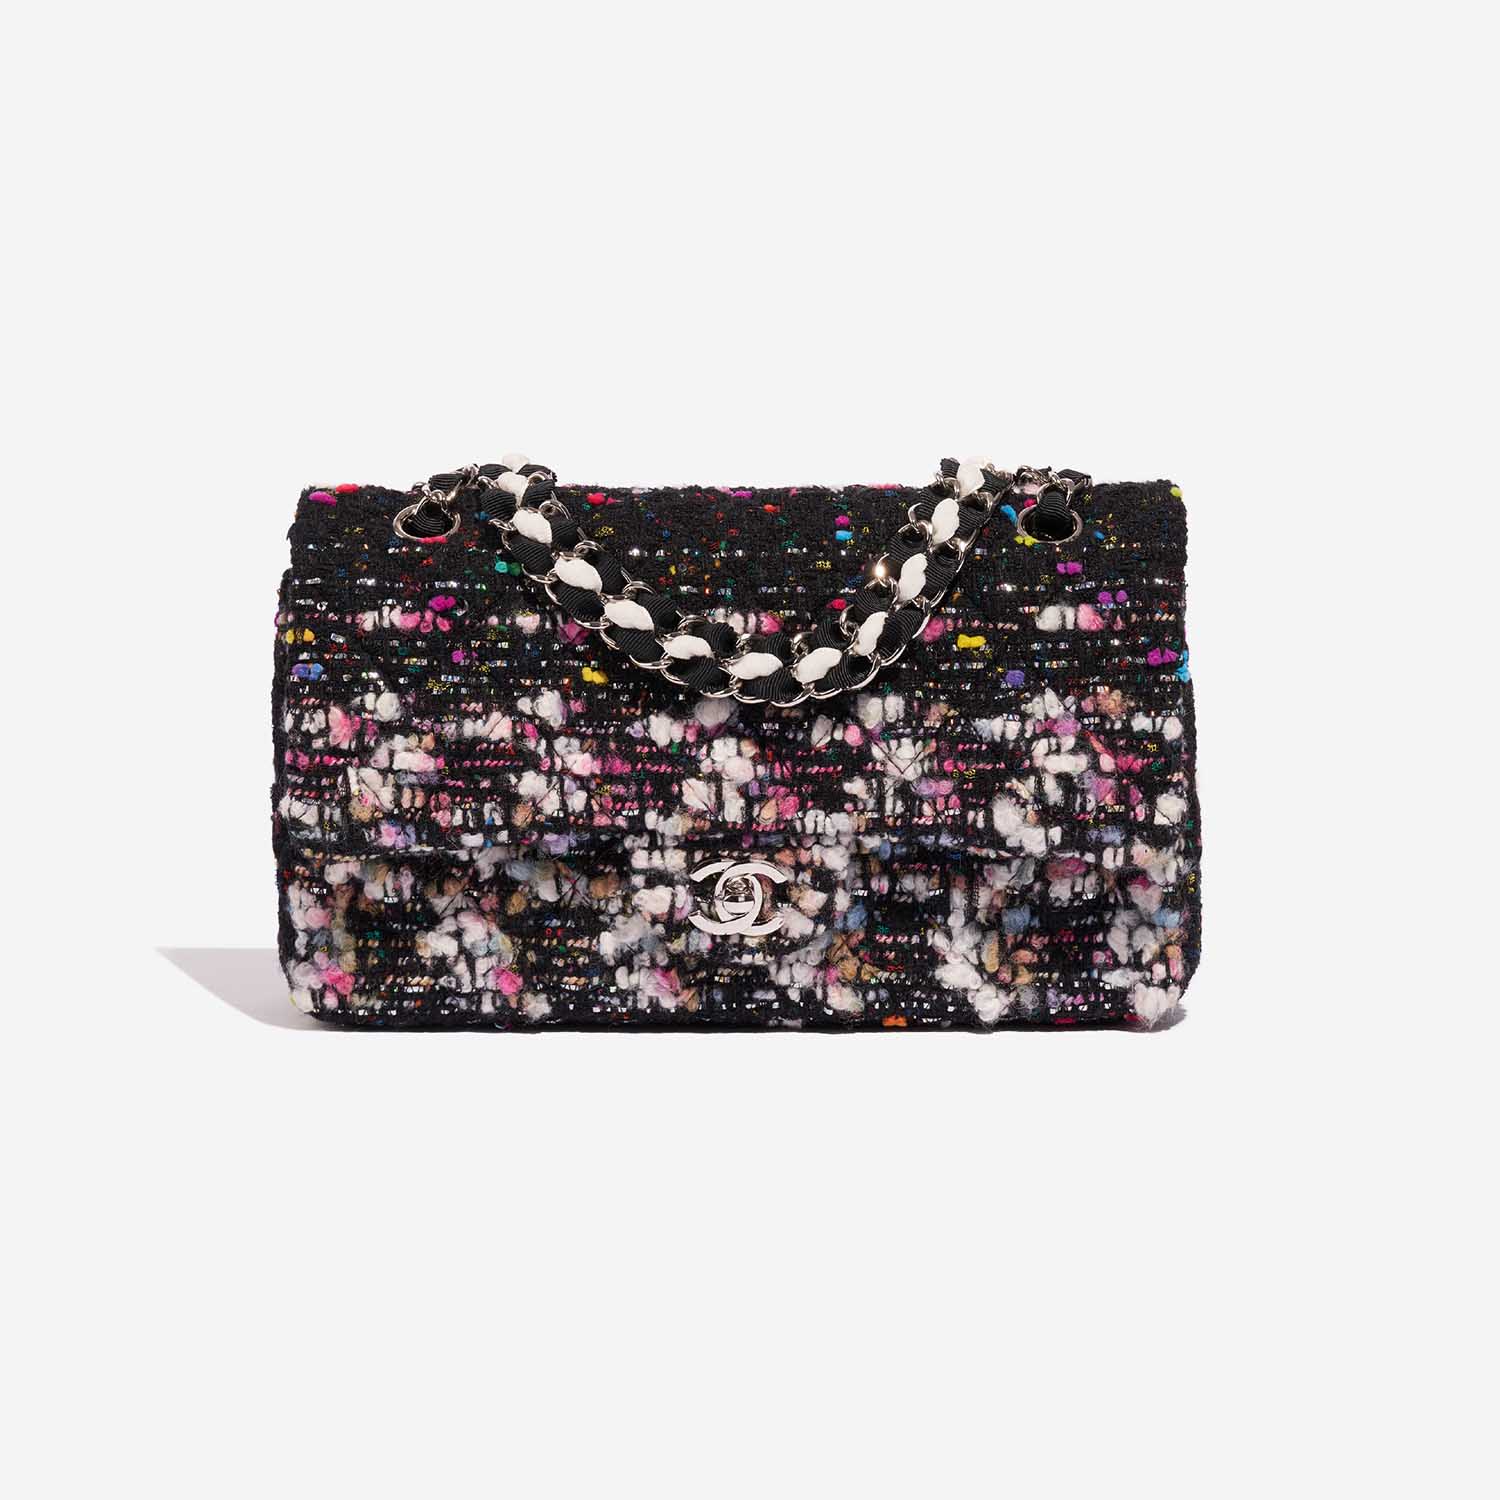 Sac Chanel d'occasion Timeless Medium Tweed Black / Multicolour Black, Multicolour Front | Vendez votre sac de créateur sur Saclab.com